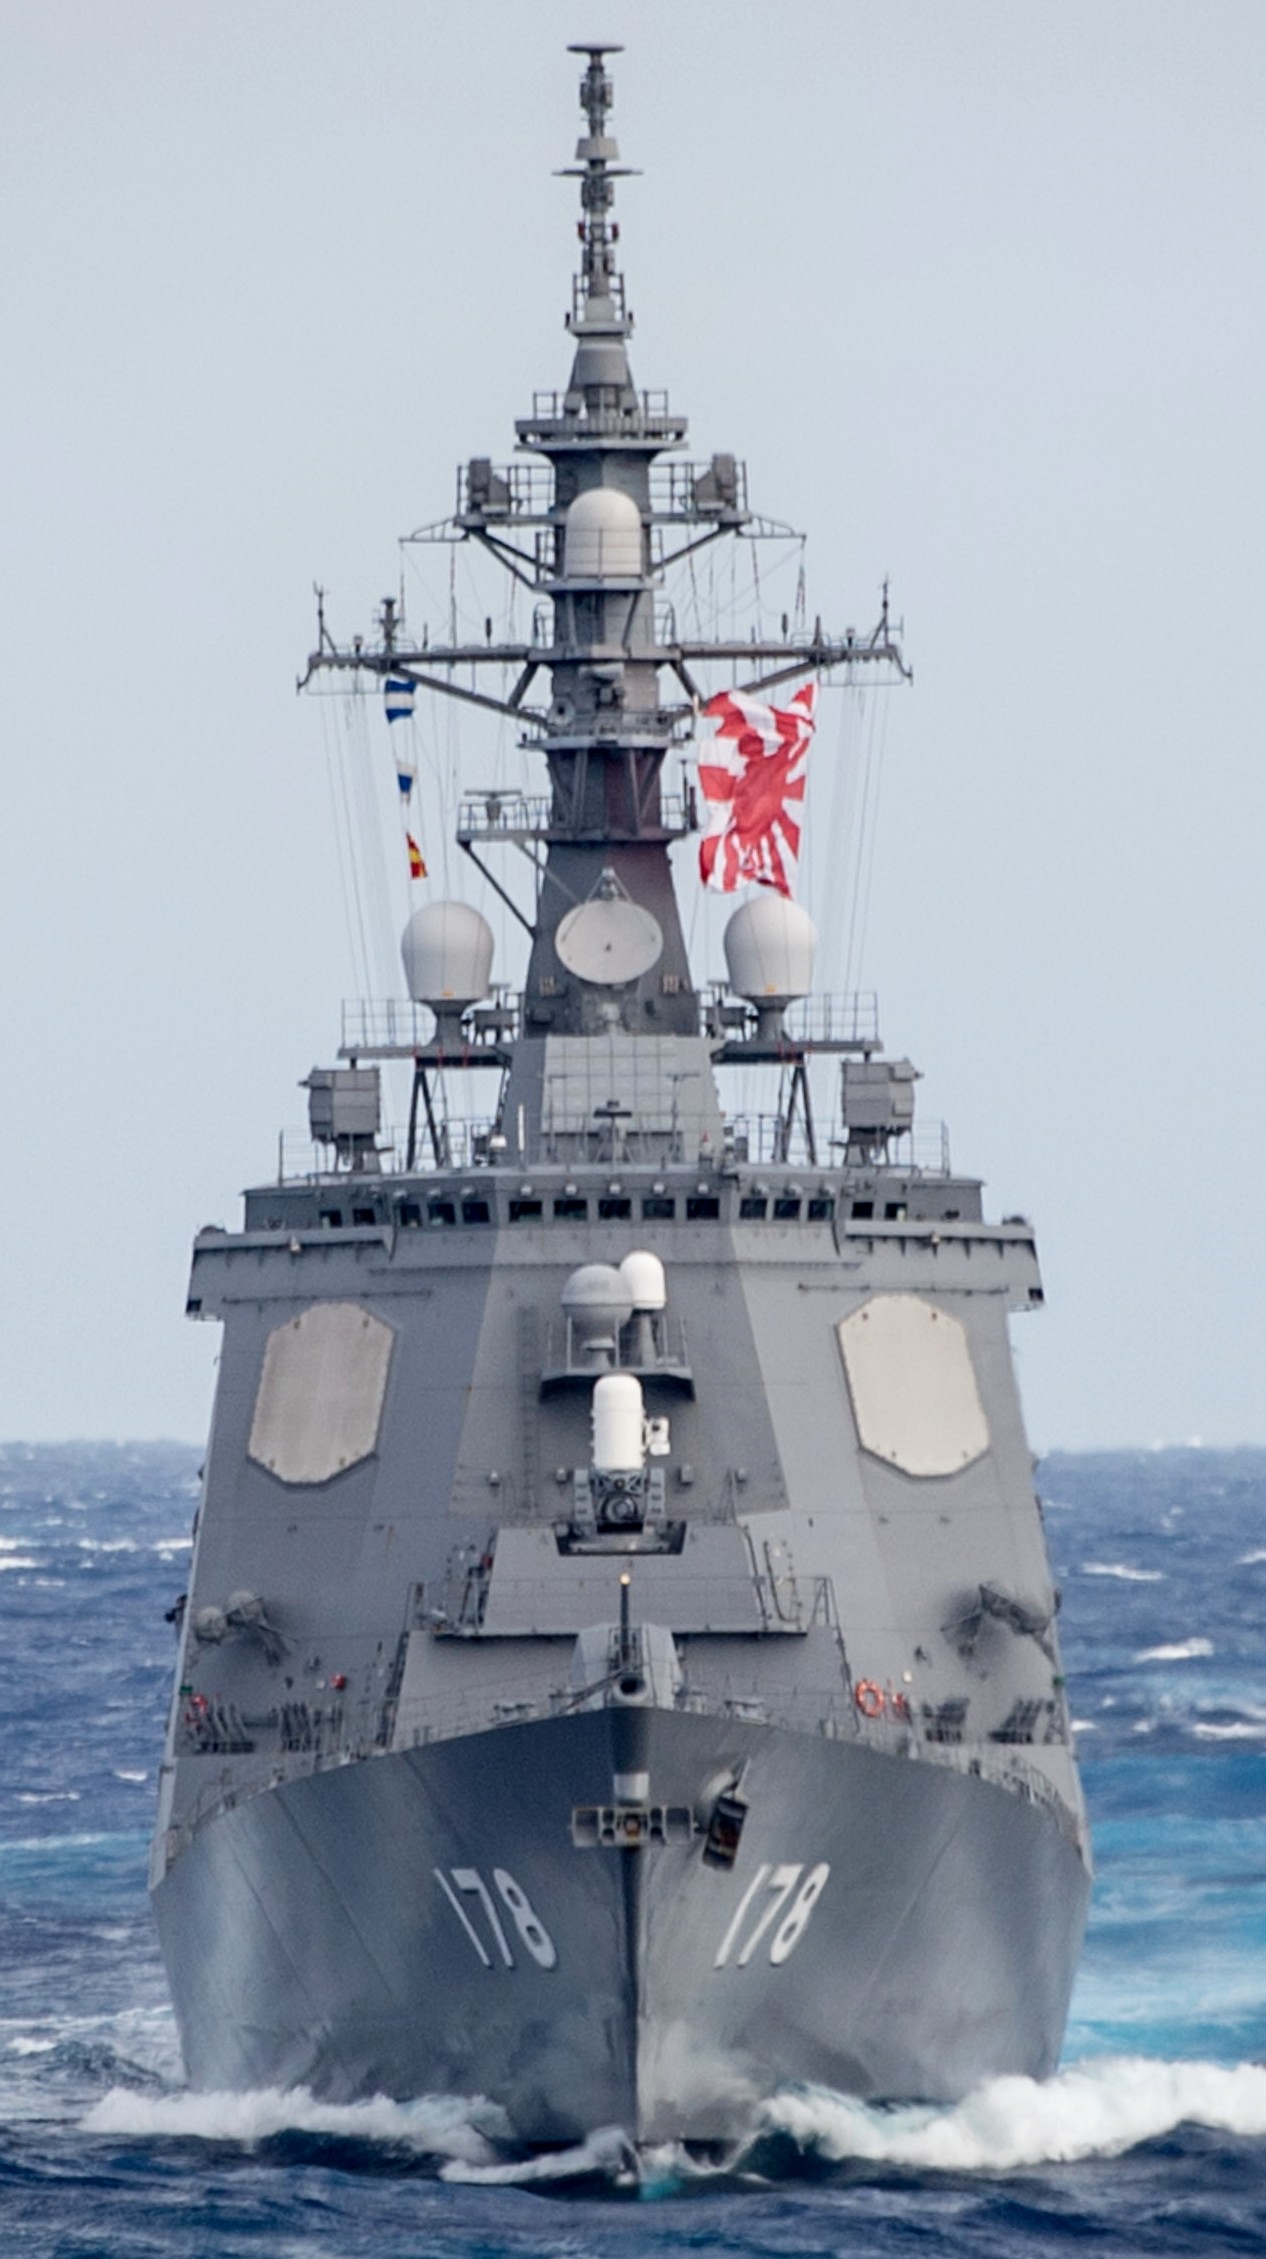 ddg-178 jds ashigara guided missile destroyer japan maritime self defense force jmsdf 14